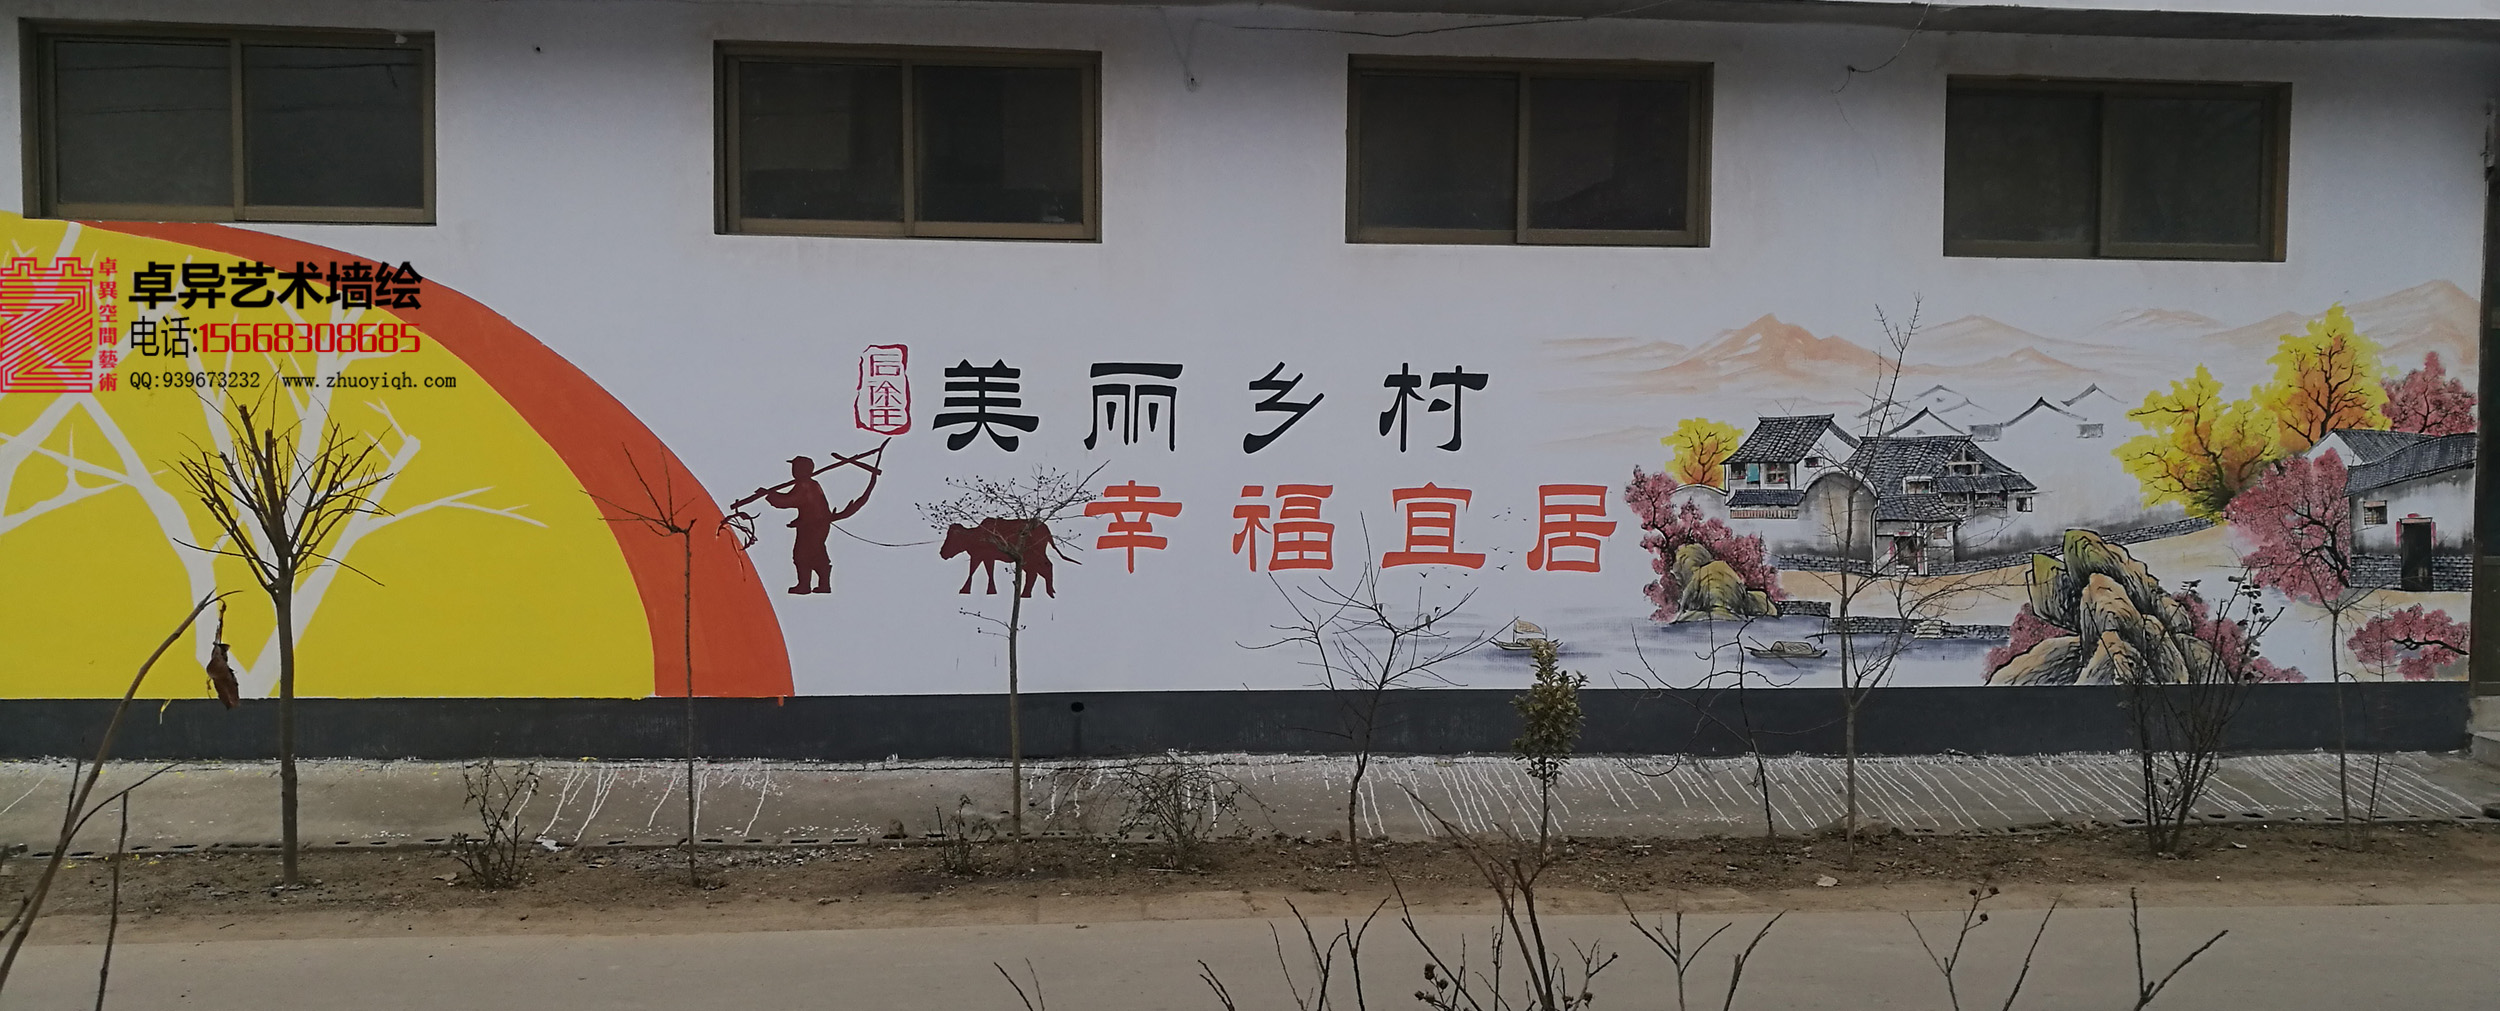 美丽乡村文化墙图片,农村徽式山水墙画,农村墙绘